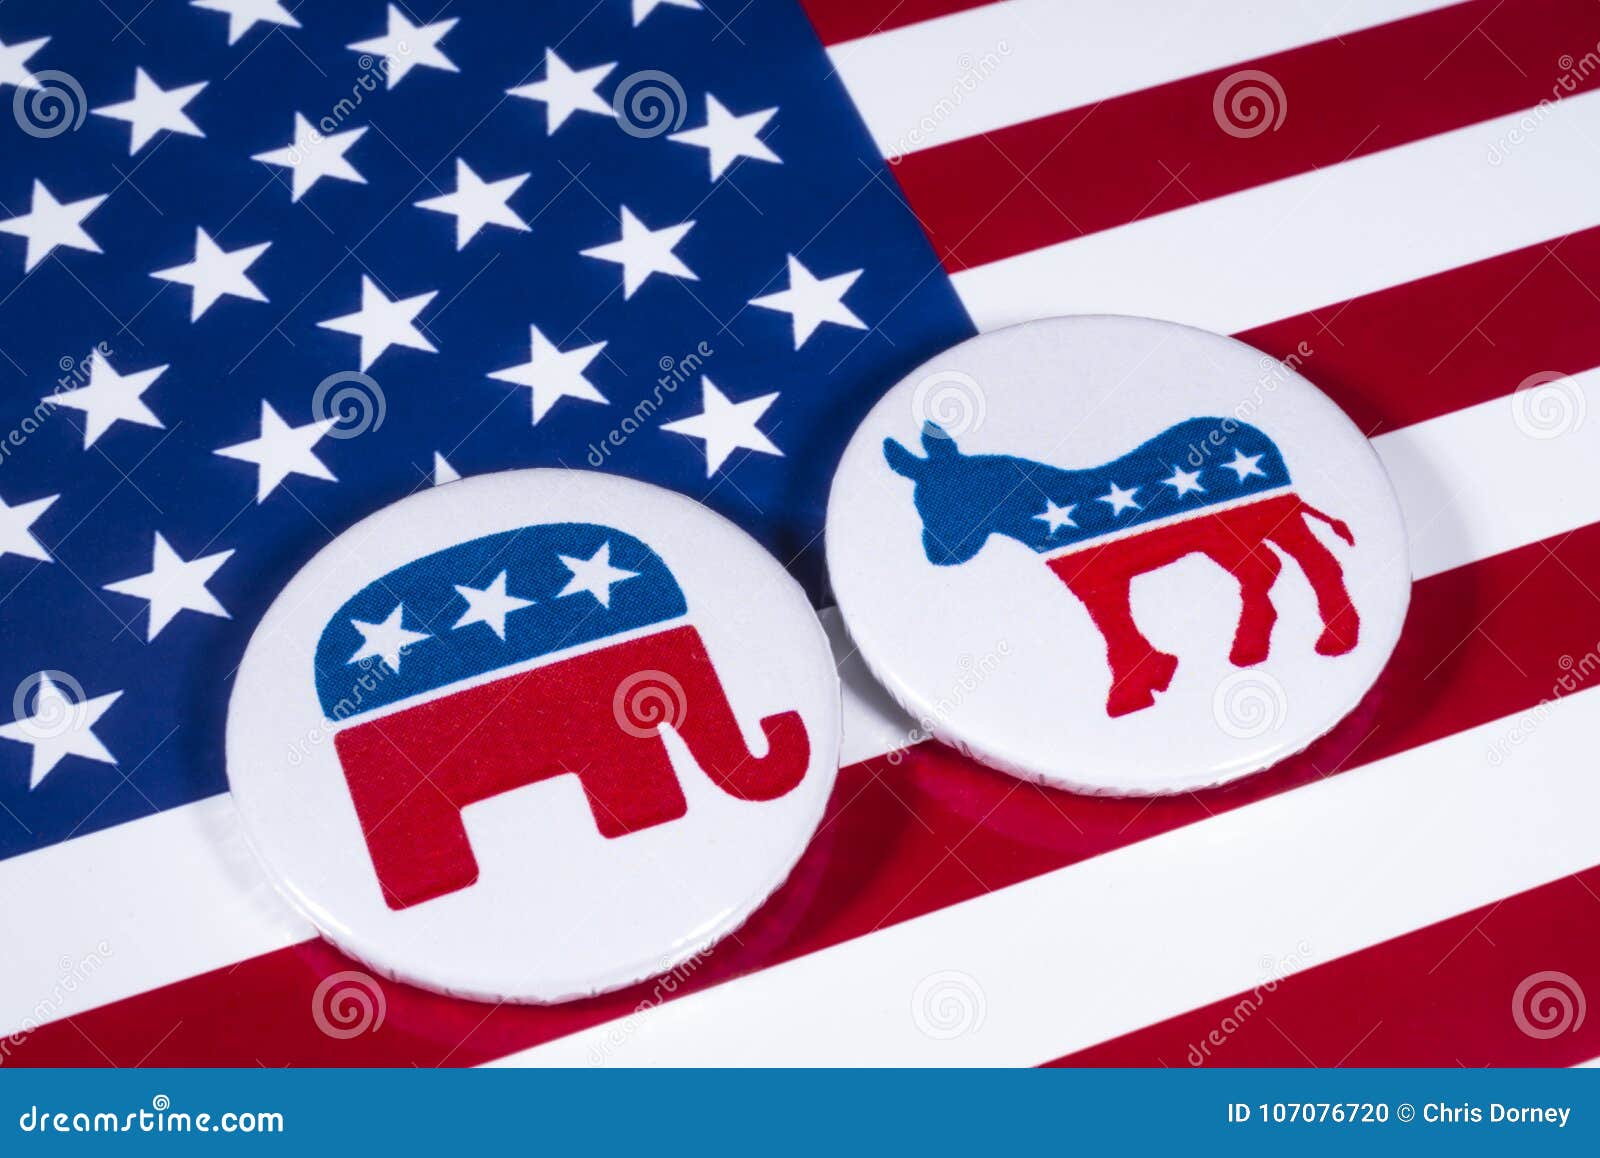 Republicanos e Democratas imagem editorial. Imagem de democratas - 107076720